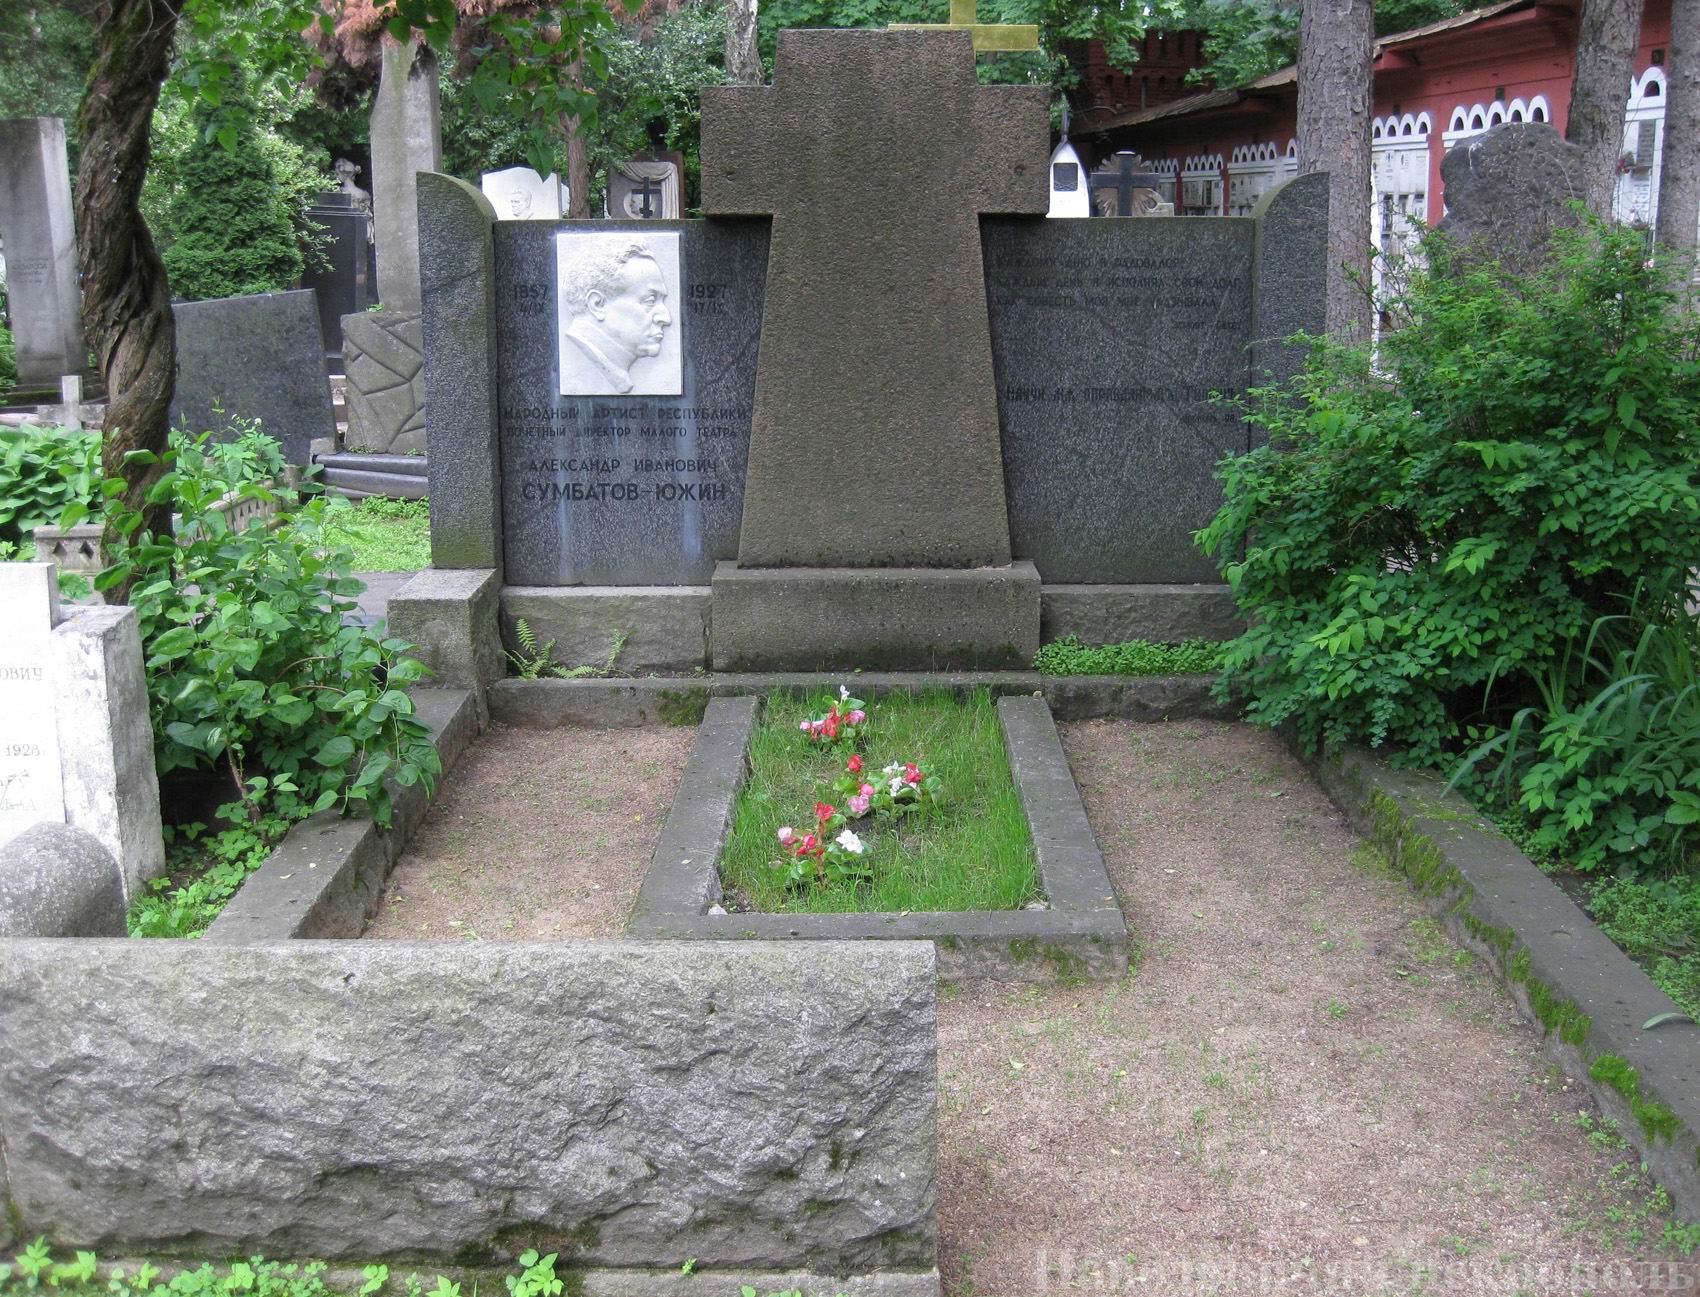 Памятник на могиле Сумбатова-Южина А.И. (1857-1927), ск. В.Домогацкий, на Новодевичьем кладбище (2-9-25). Нажмите левую кнопку мыши, чтобы увидеть фрагменты памятника.